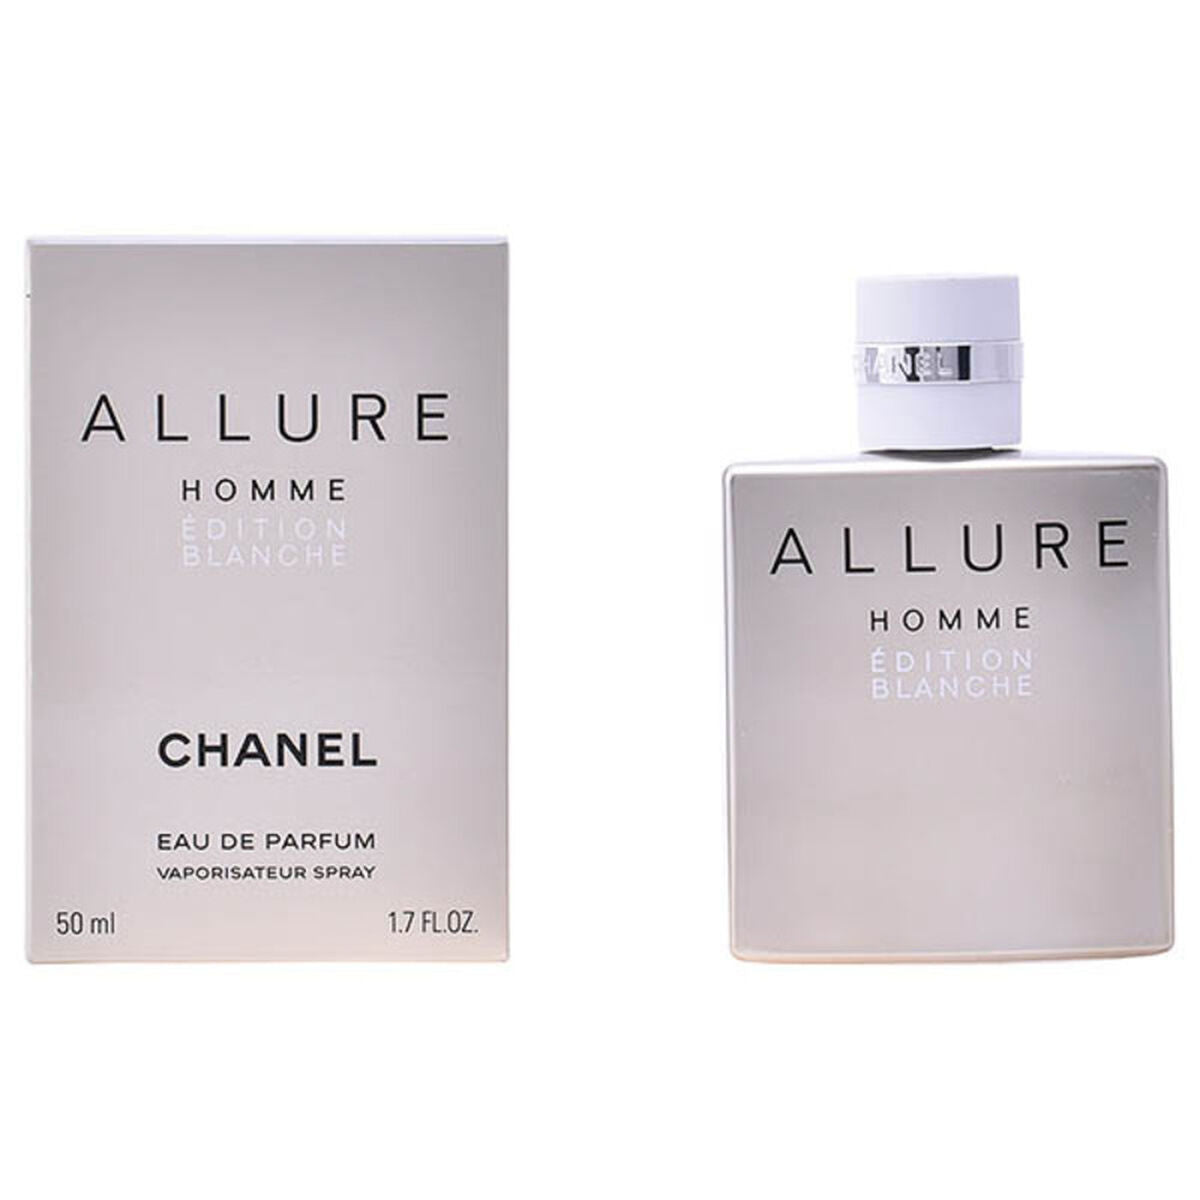 Kaufe Allure Homme Edition Blanche Chanel EDP - Herren bei AWK Flagship um € 123.00